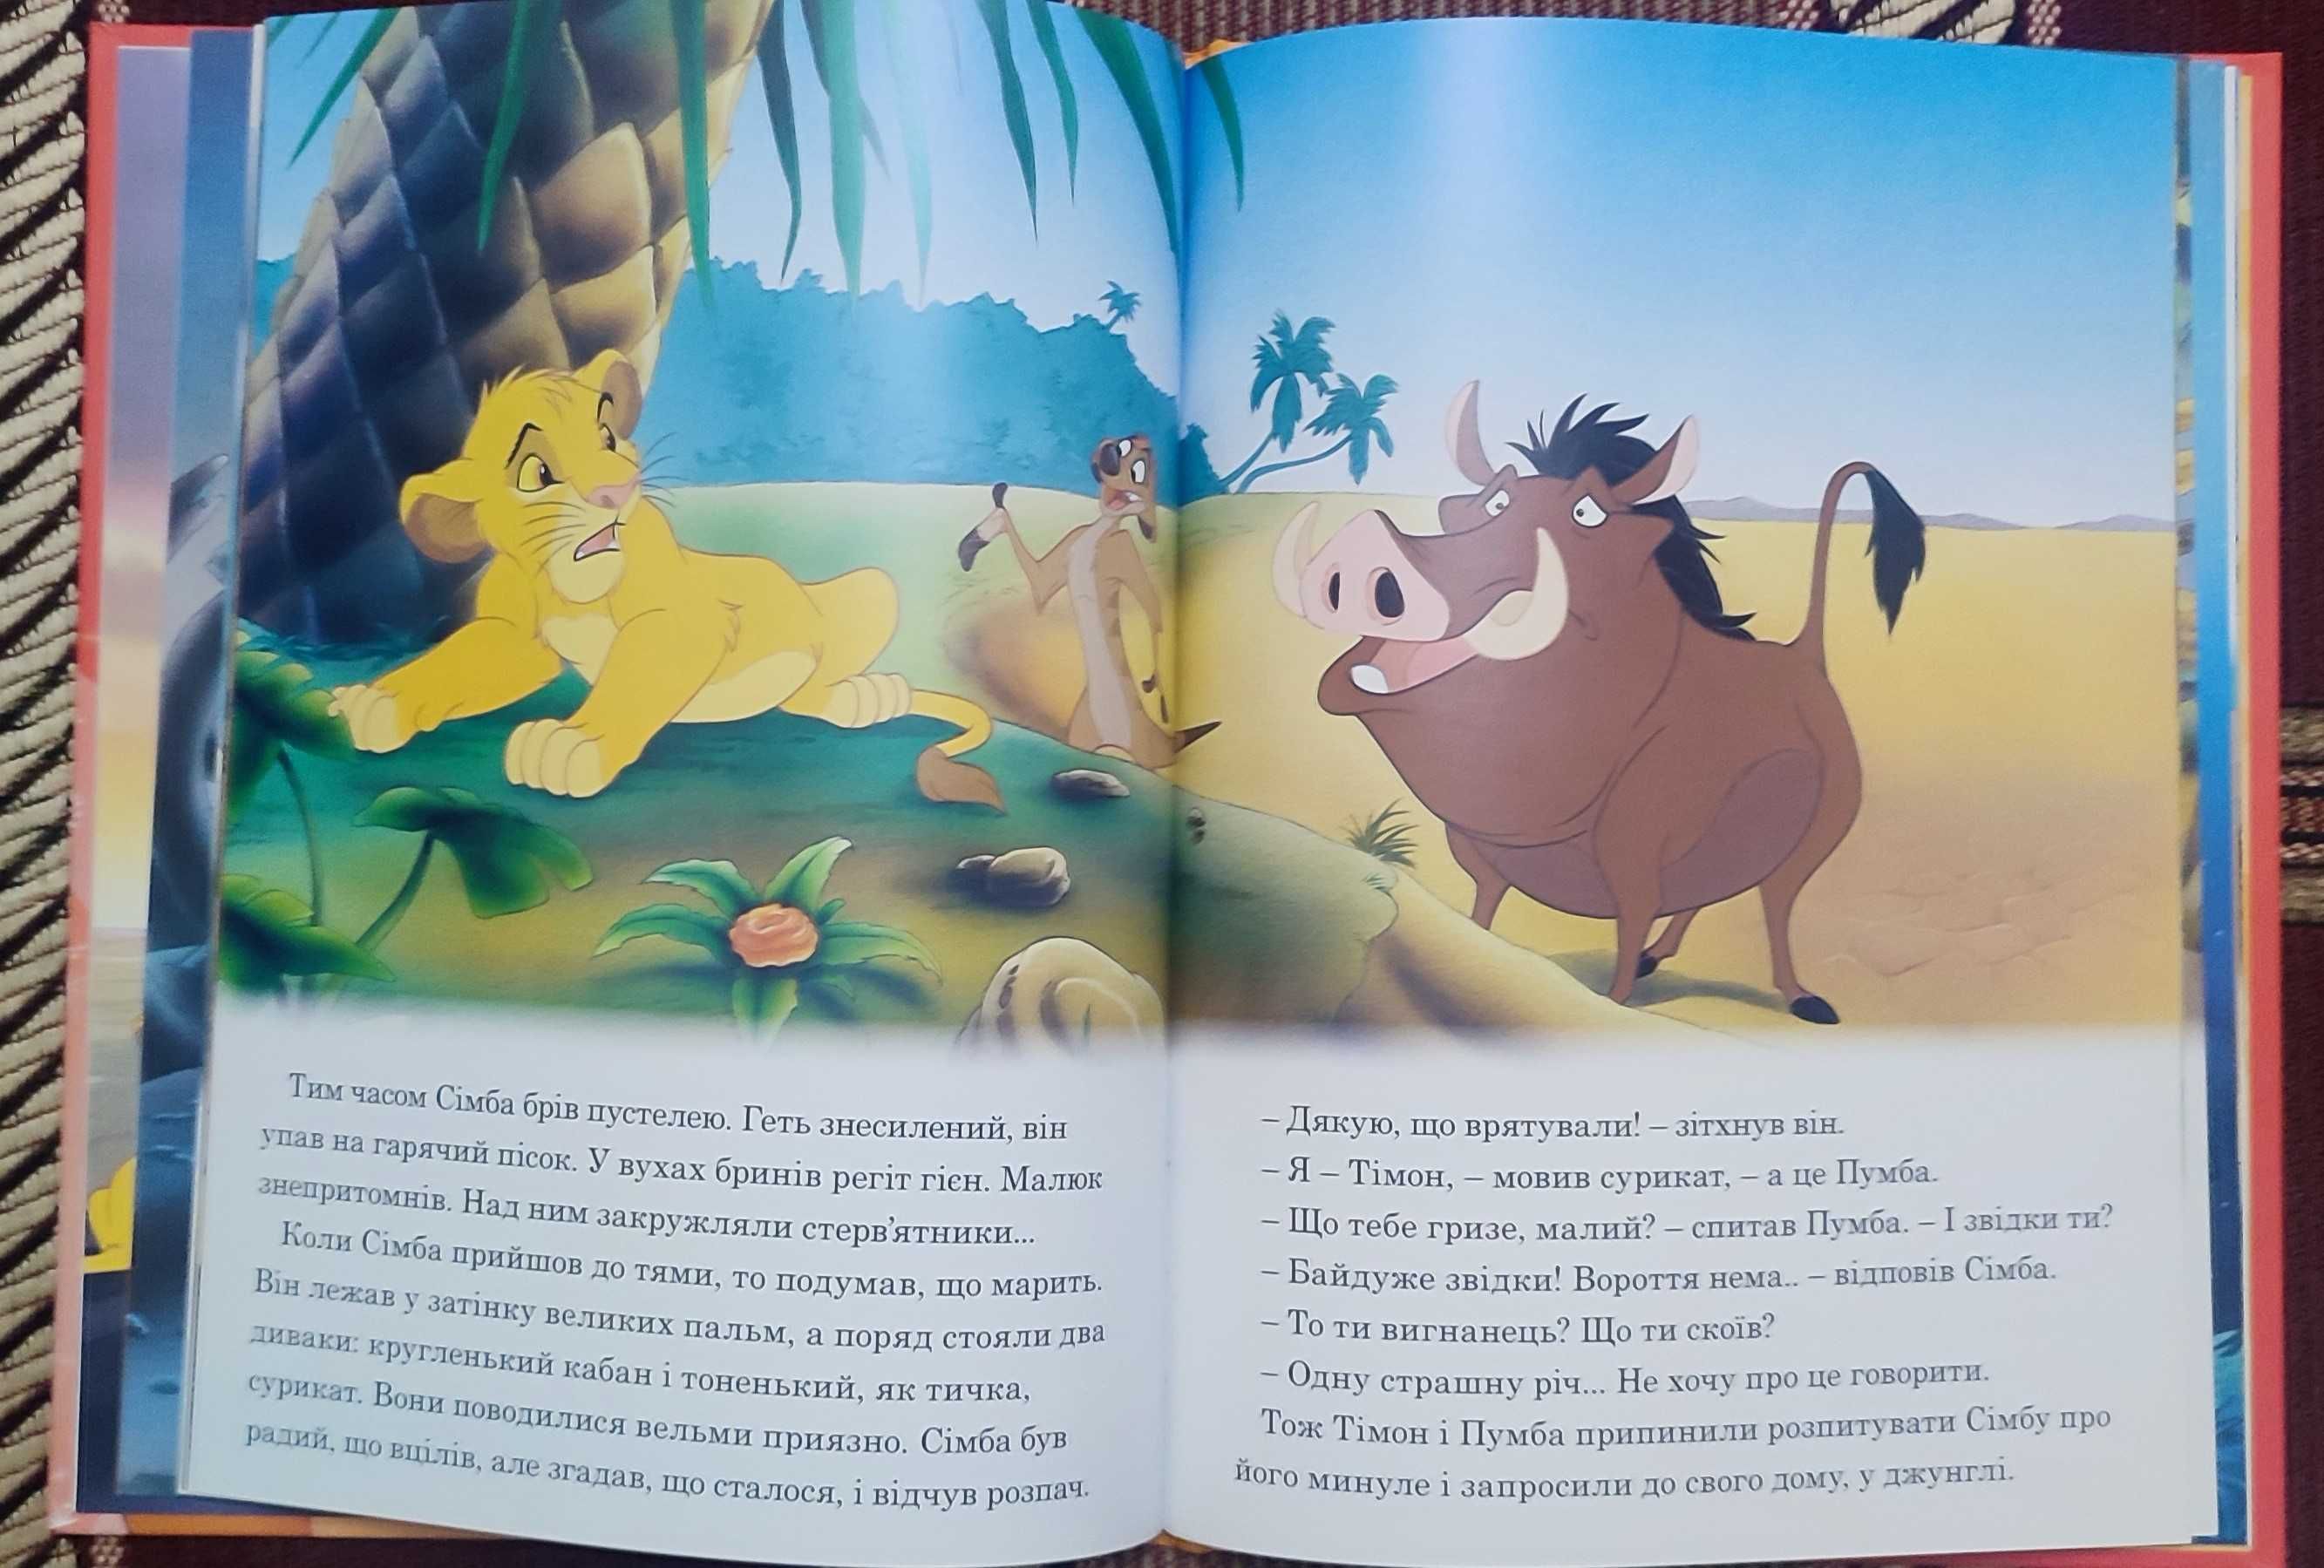 Disney Магічна колекція "Книга джунглів" та "Король лев"